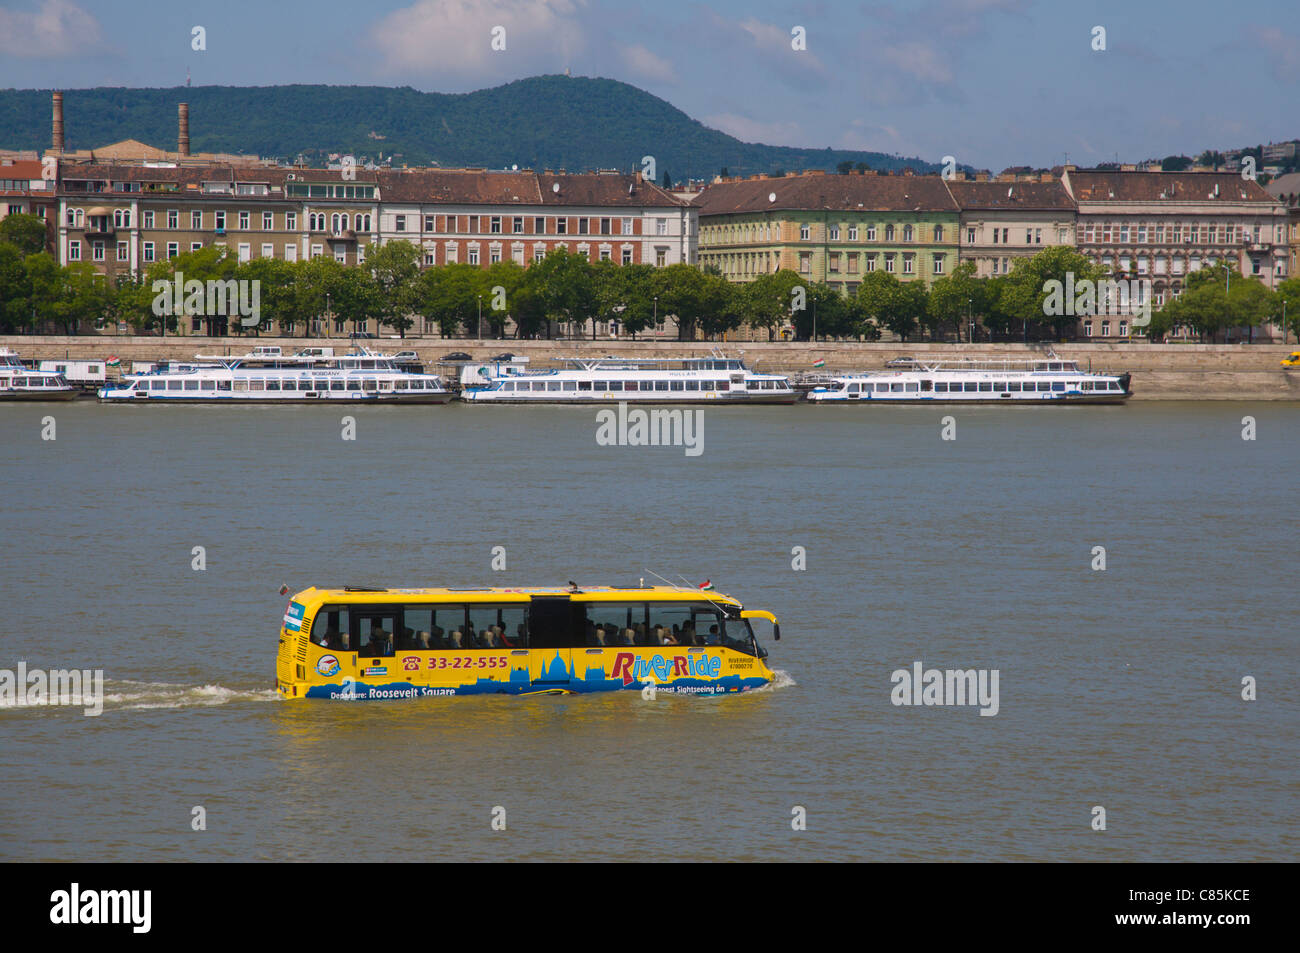 RiverRide anfibio acqua sightseeing bus sul fiume Danubio Central Budapest  Ungheria Europa Foto stock - Alamy